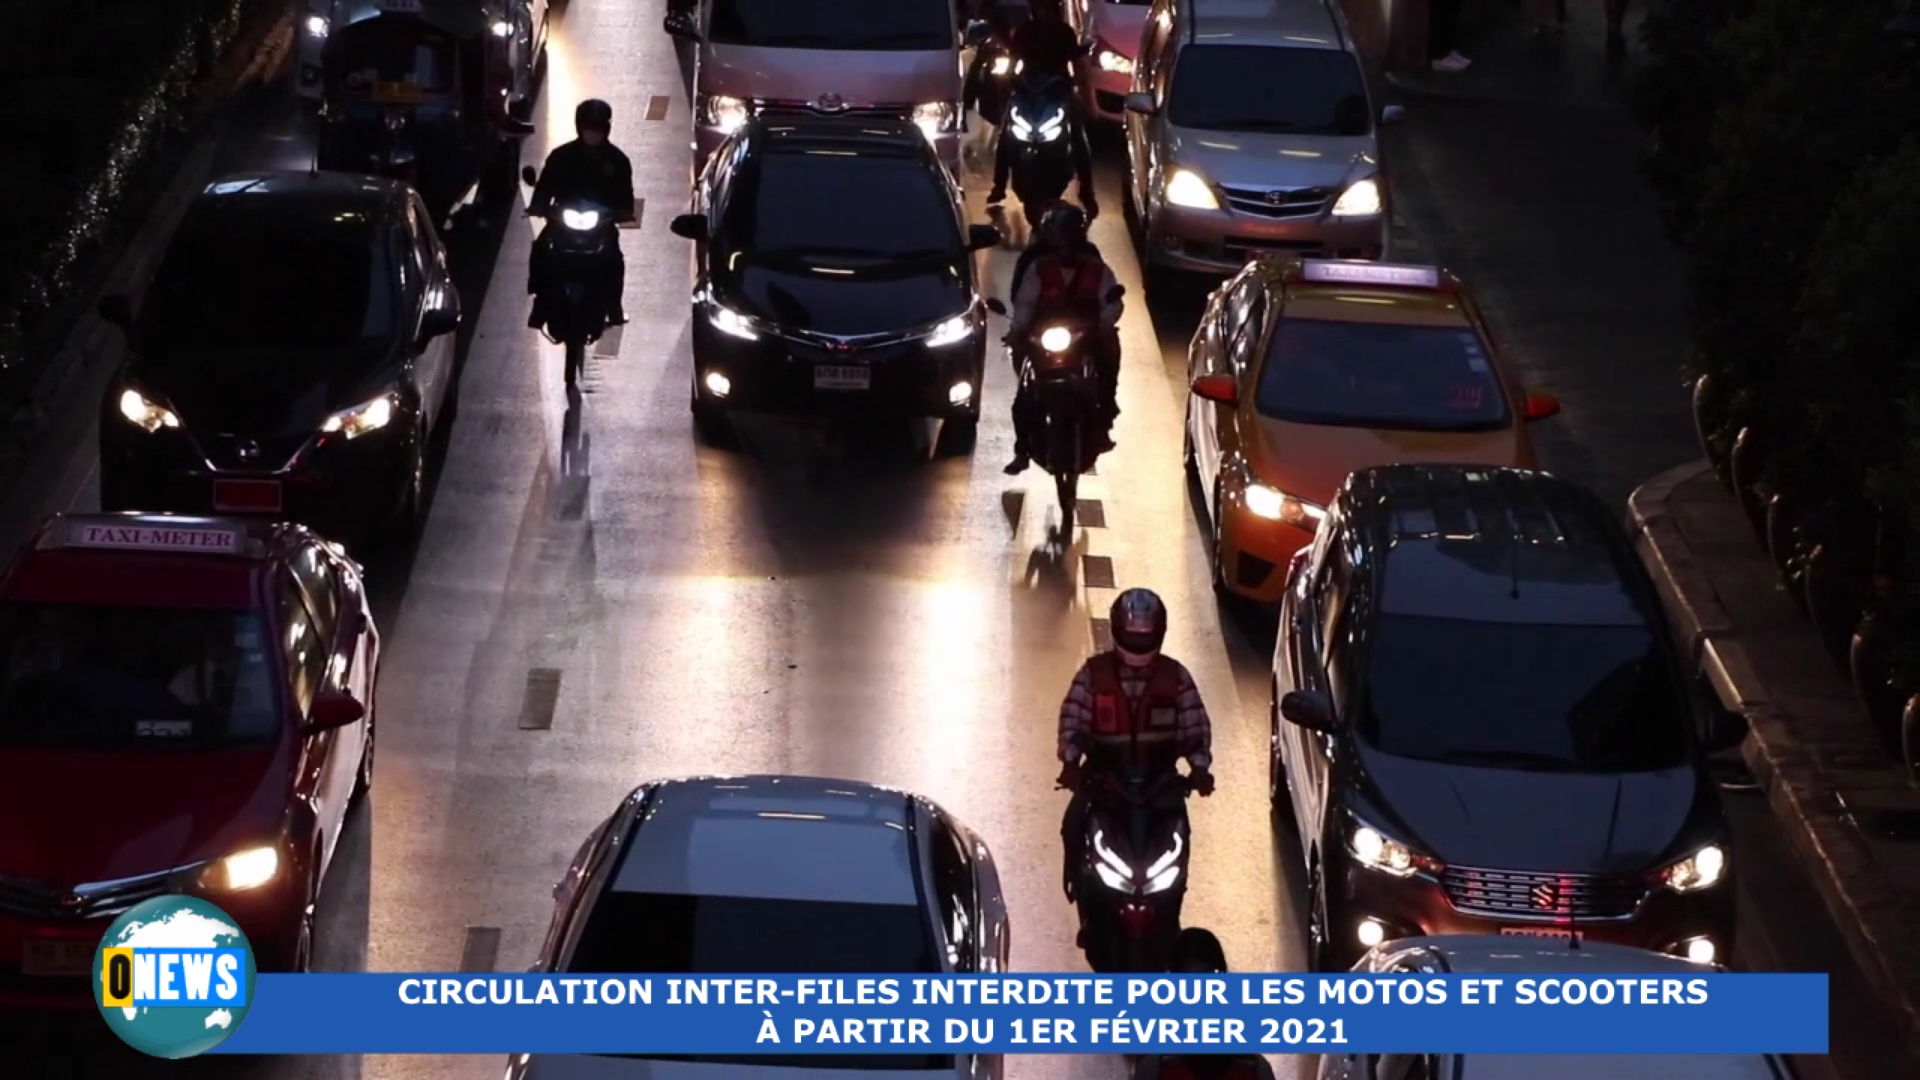 [Vidéo] A compter du 1er Février interdiction pour les 2 roues de circuler entre 2 files de voitures.